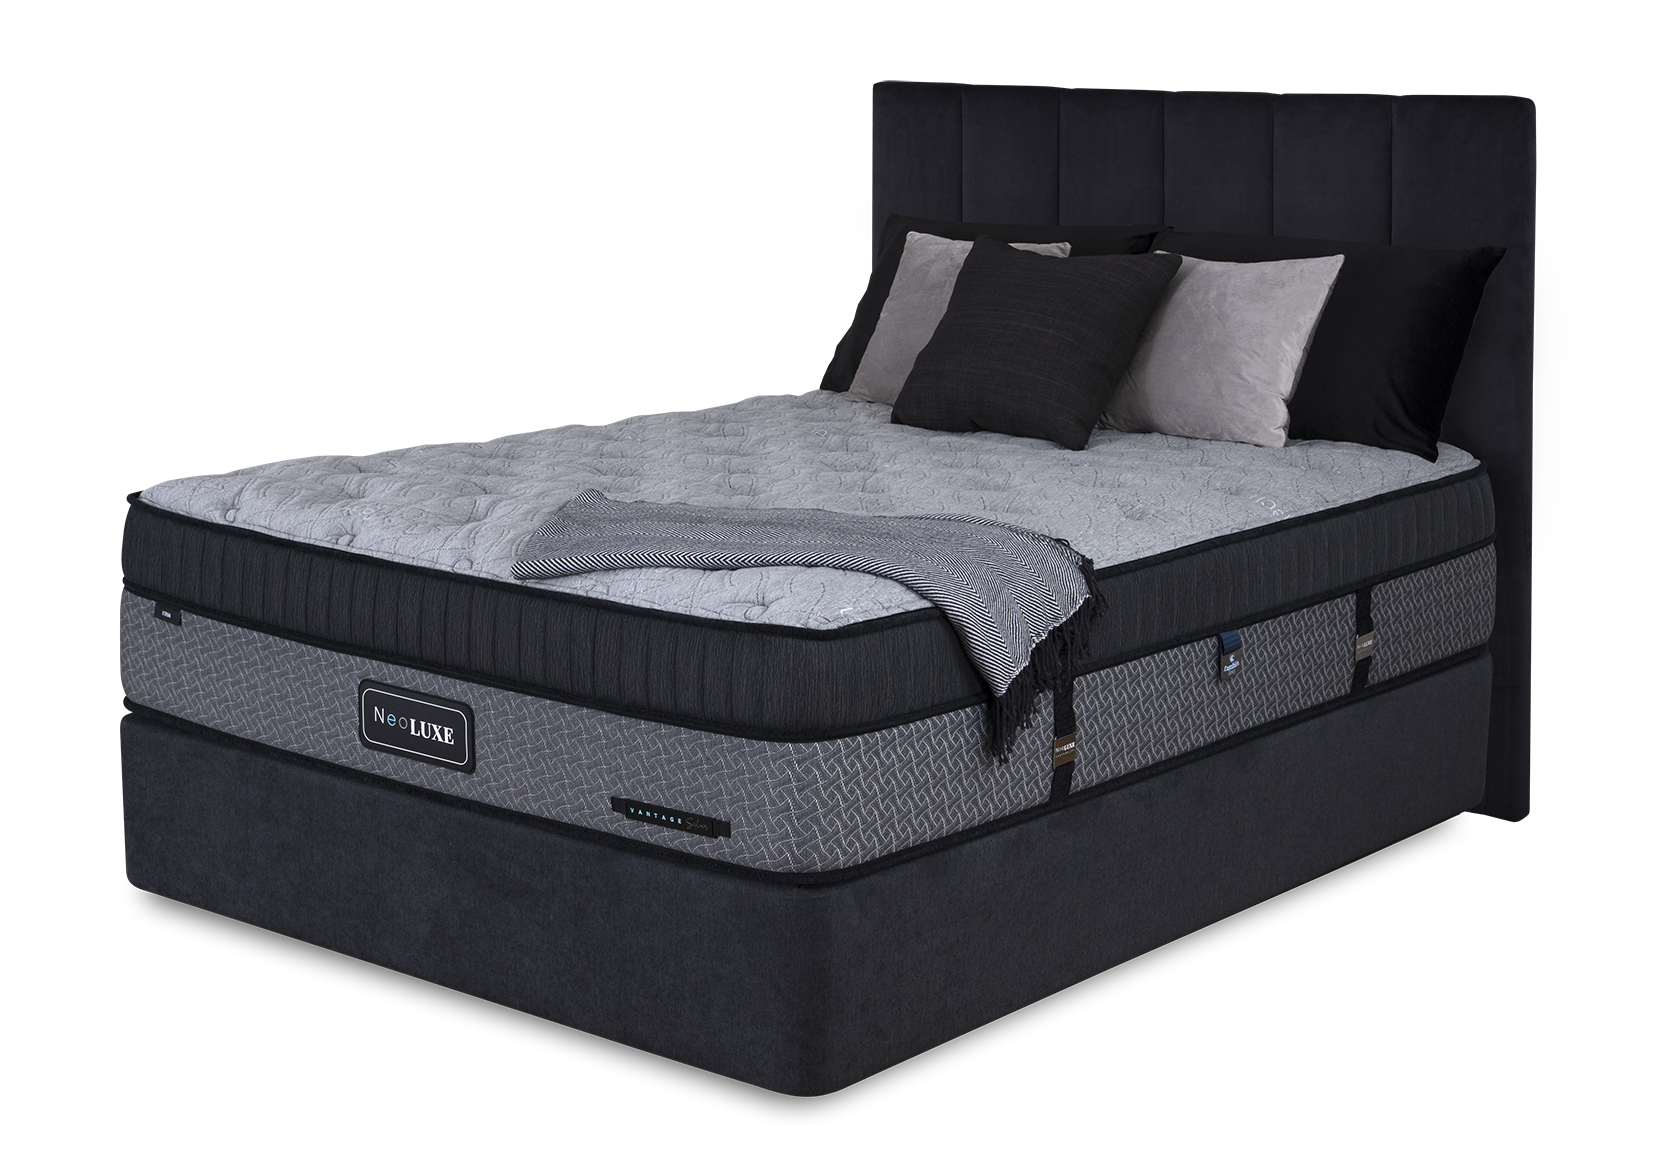 NeoLuxe | Comfort Sleep Bedding